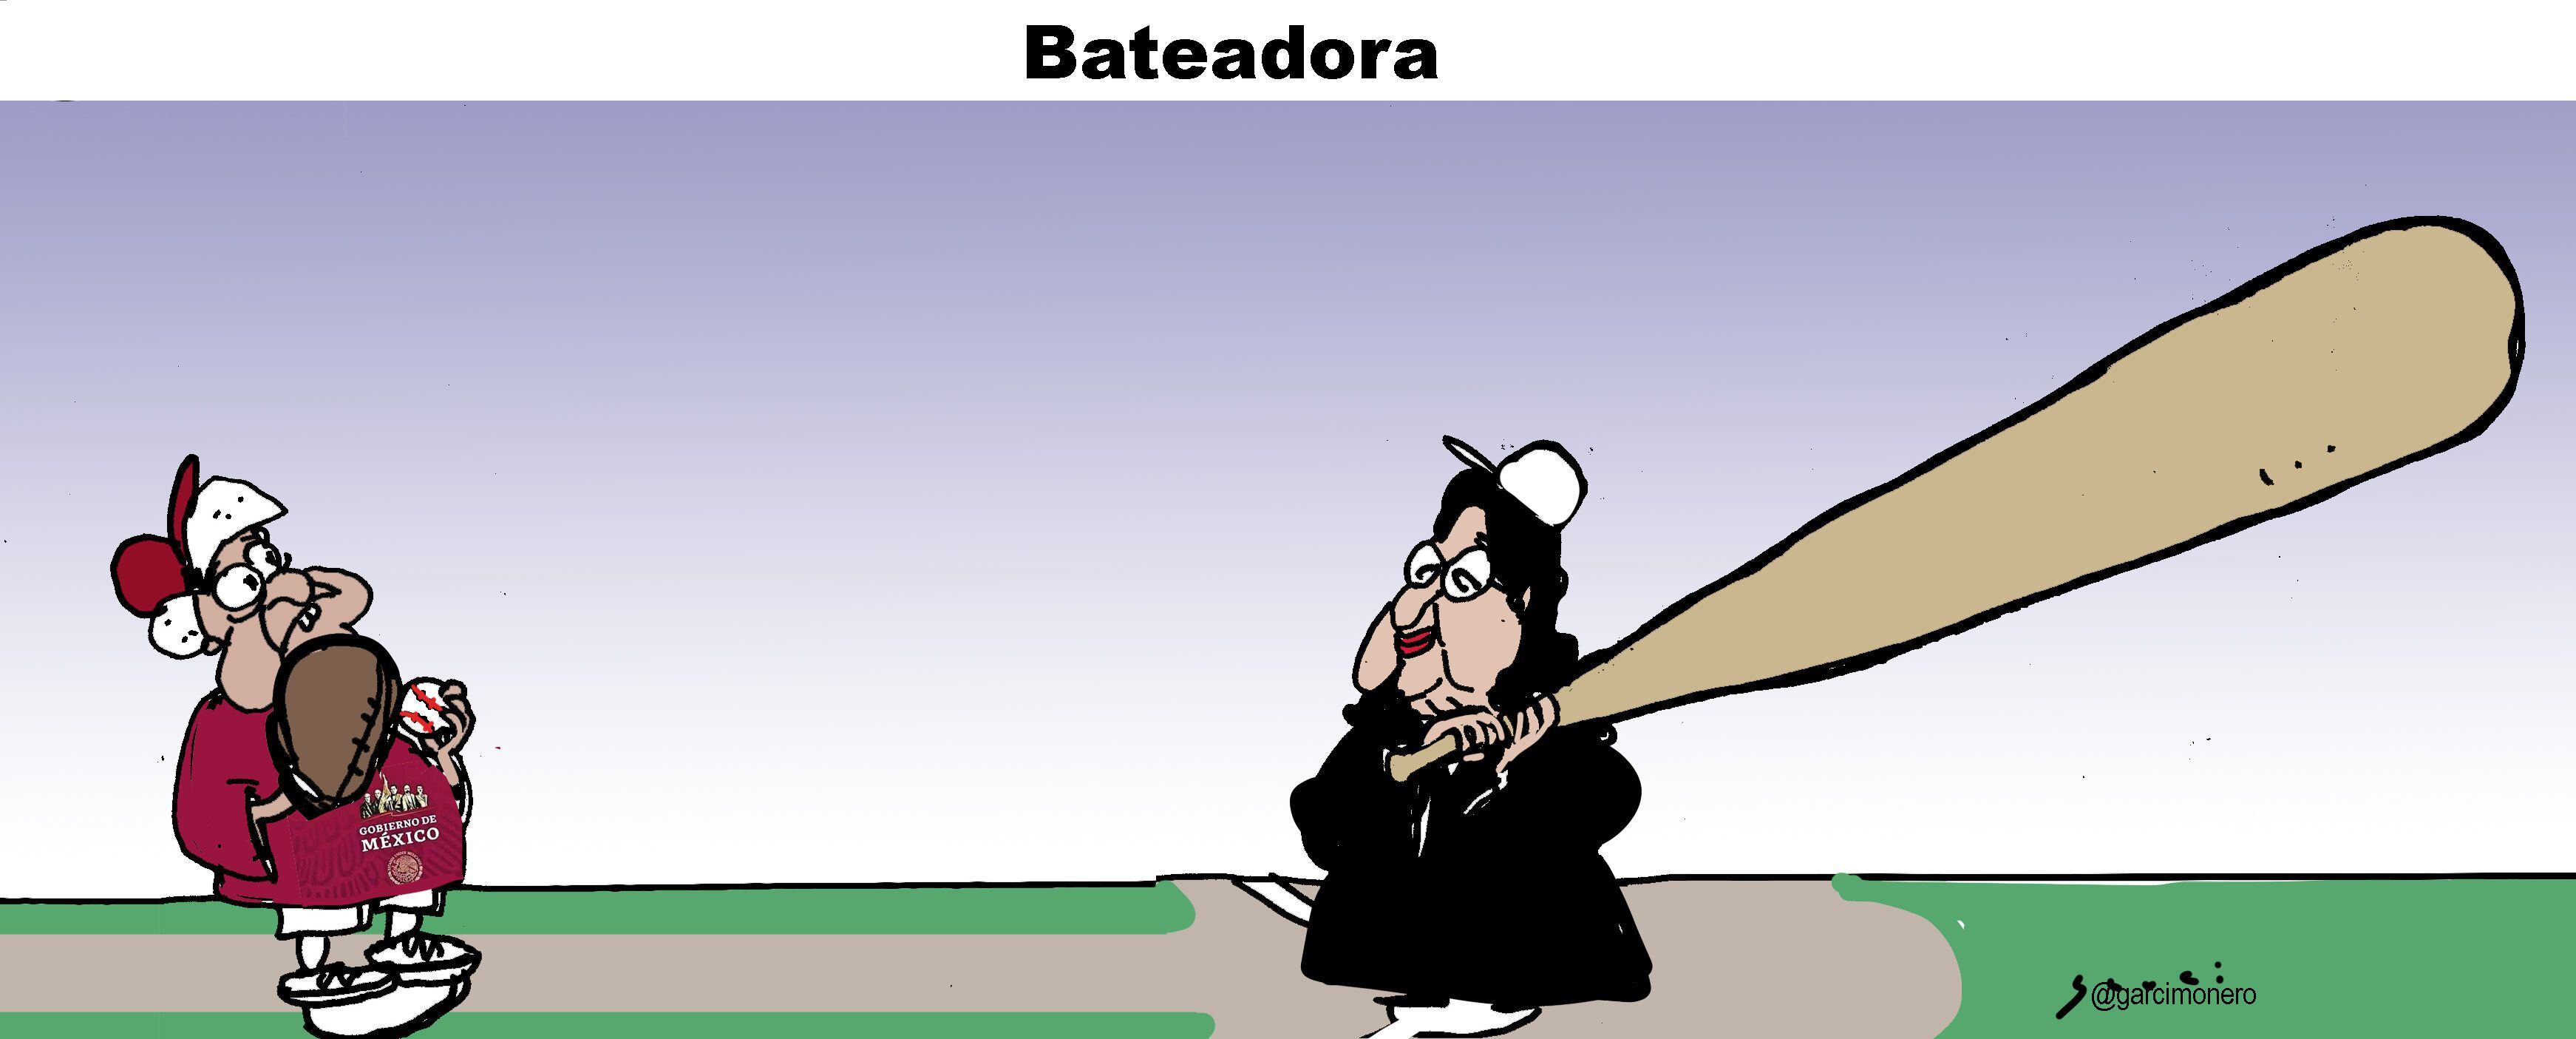 Bateadora